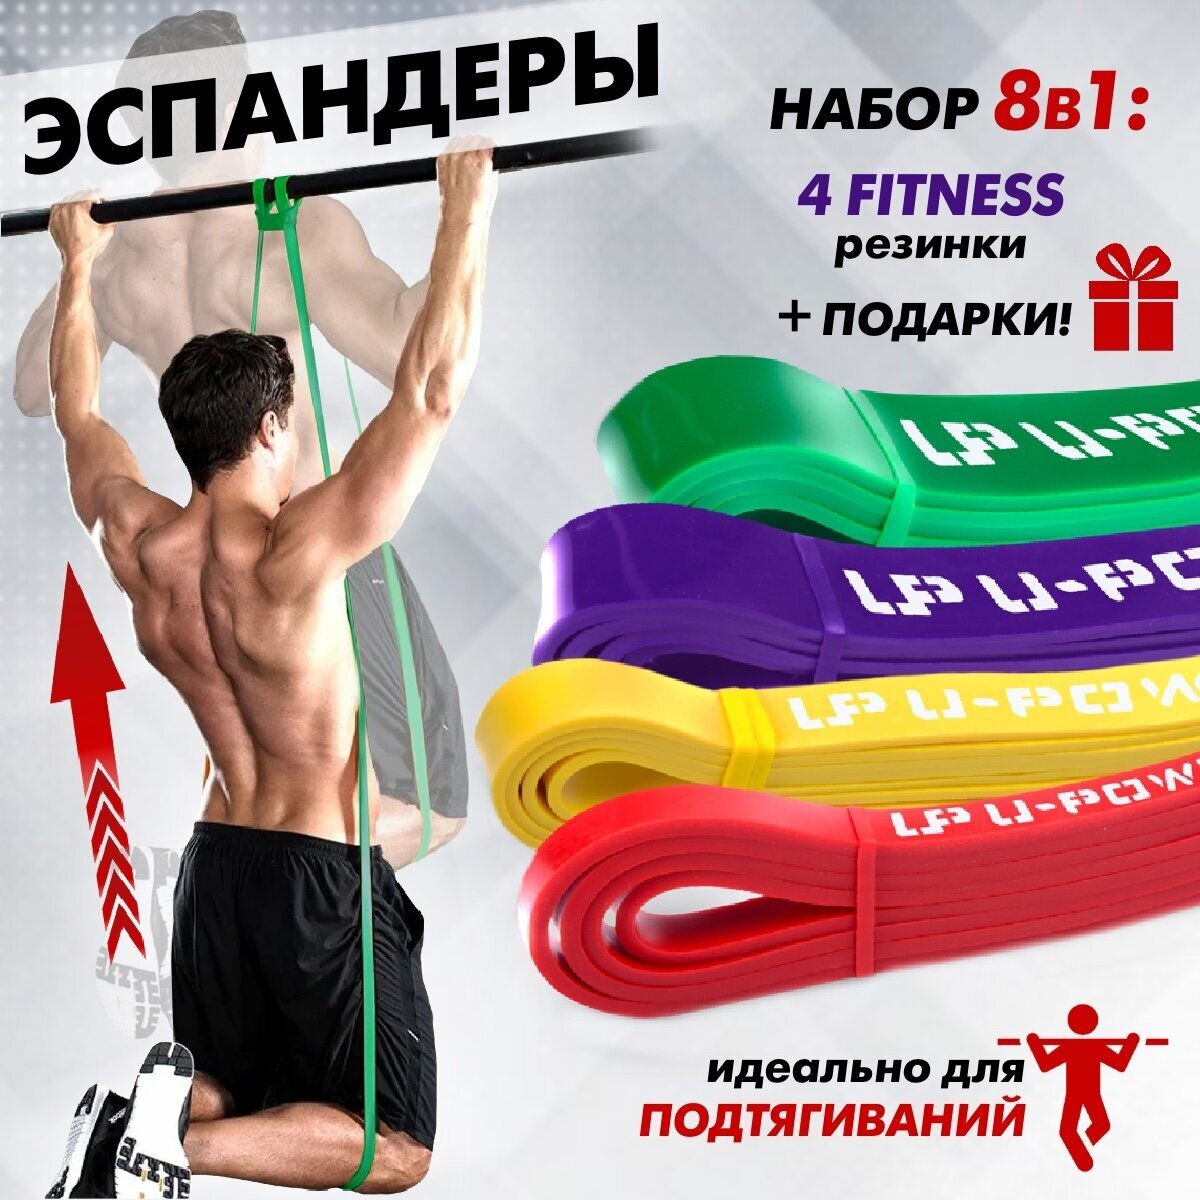 Набор резинки для фитнеса спортивные эспандер ленточный эластичная лента жгут спортивный для подтягивания спорт товары набор экспандеров 4 шт.